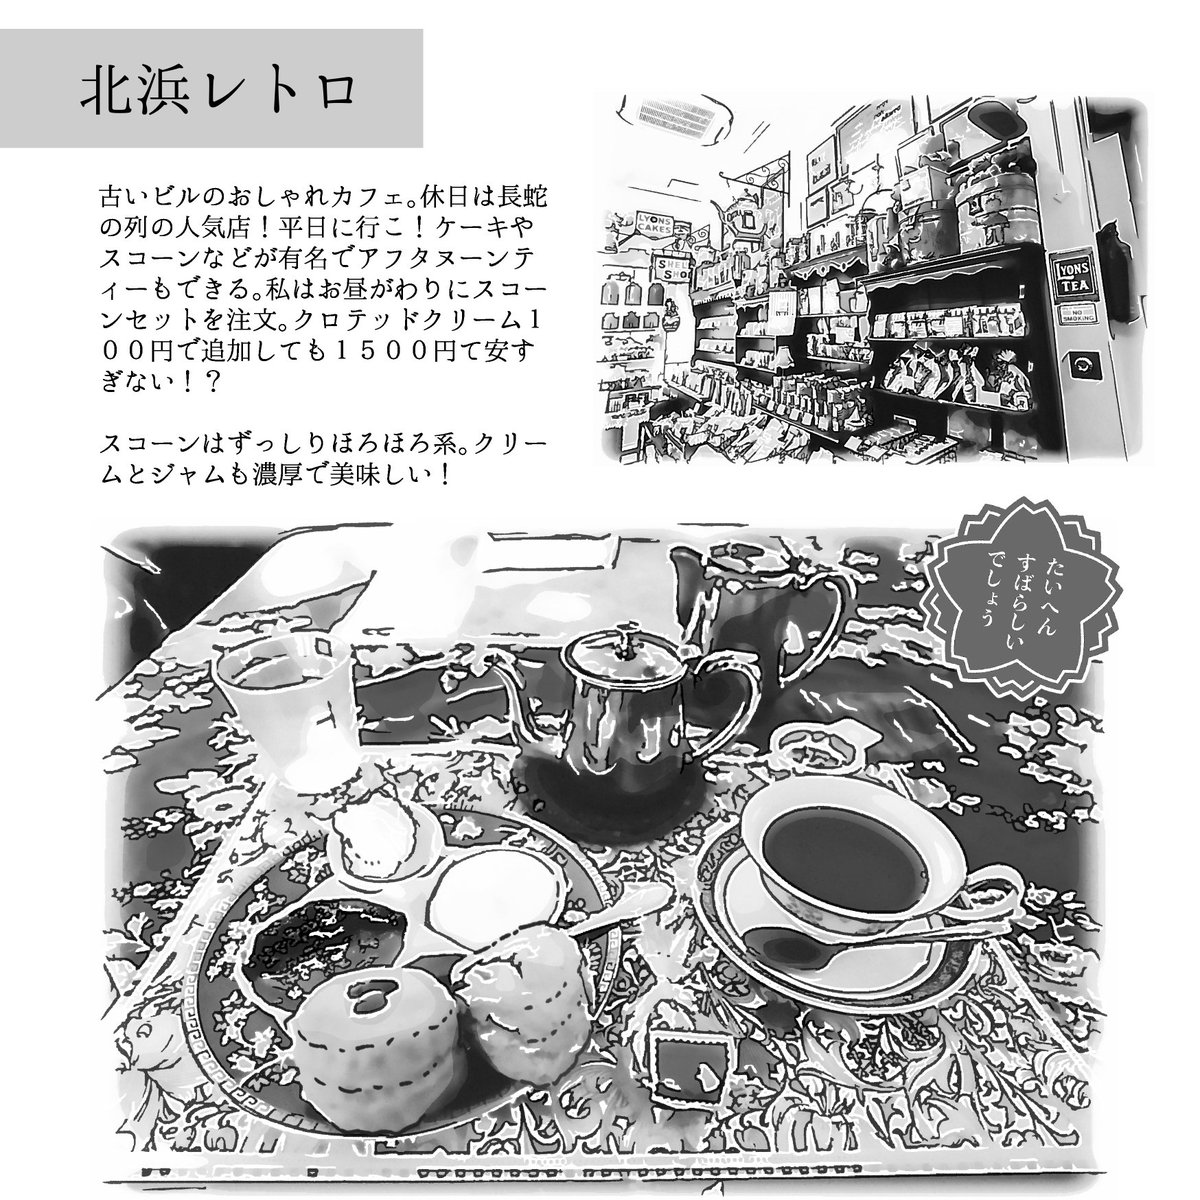 #KindleUnlimited にて京都 大阪 旅行記を公開しました!アンリミ会員の方は無料で読めます!会員でない方は300円です  レストラン、喫茶店、建物、観光地など「人に紹介したいほどよかったところ」を27箇所載せました  #ad #旅行記